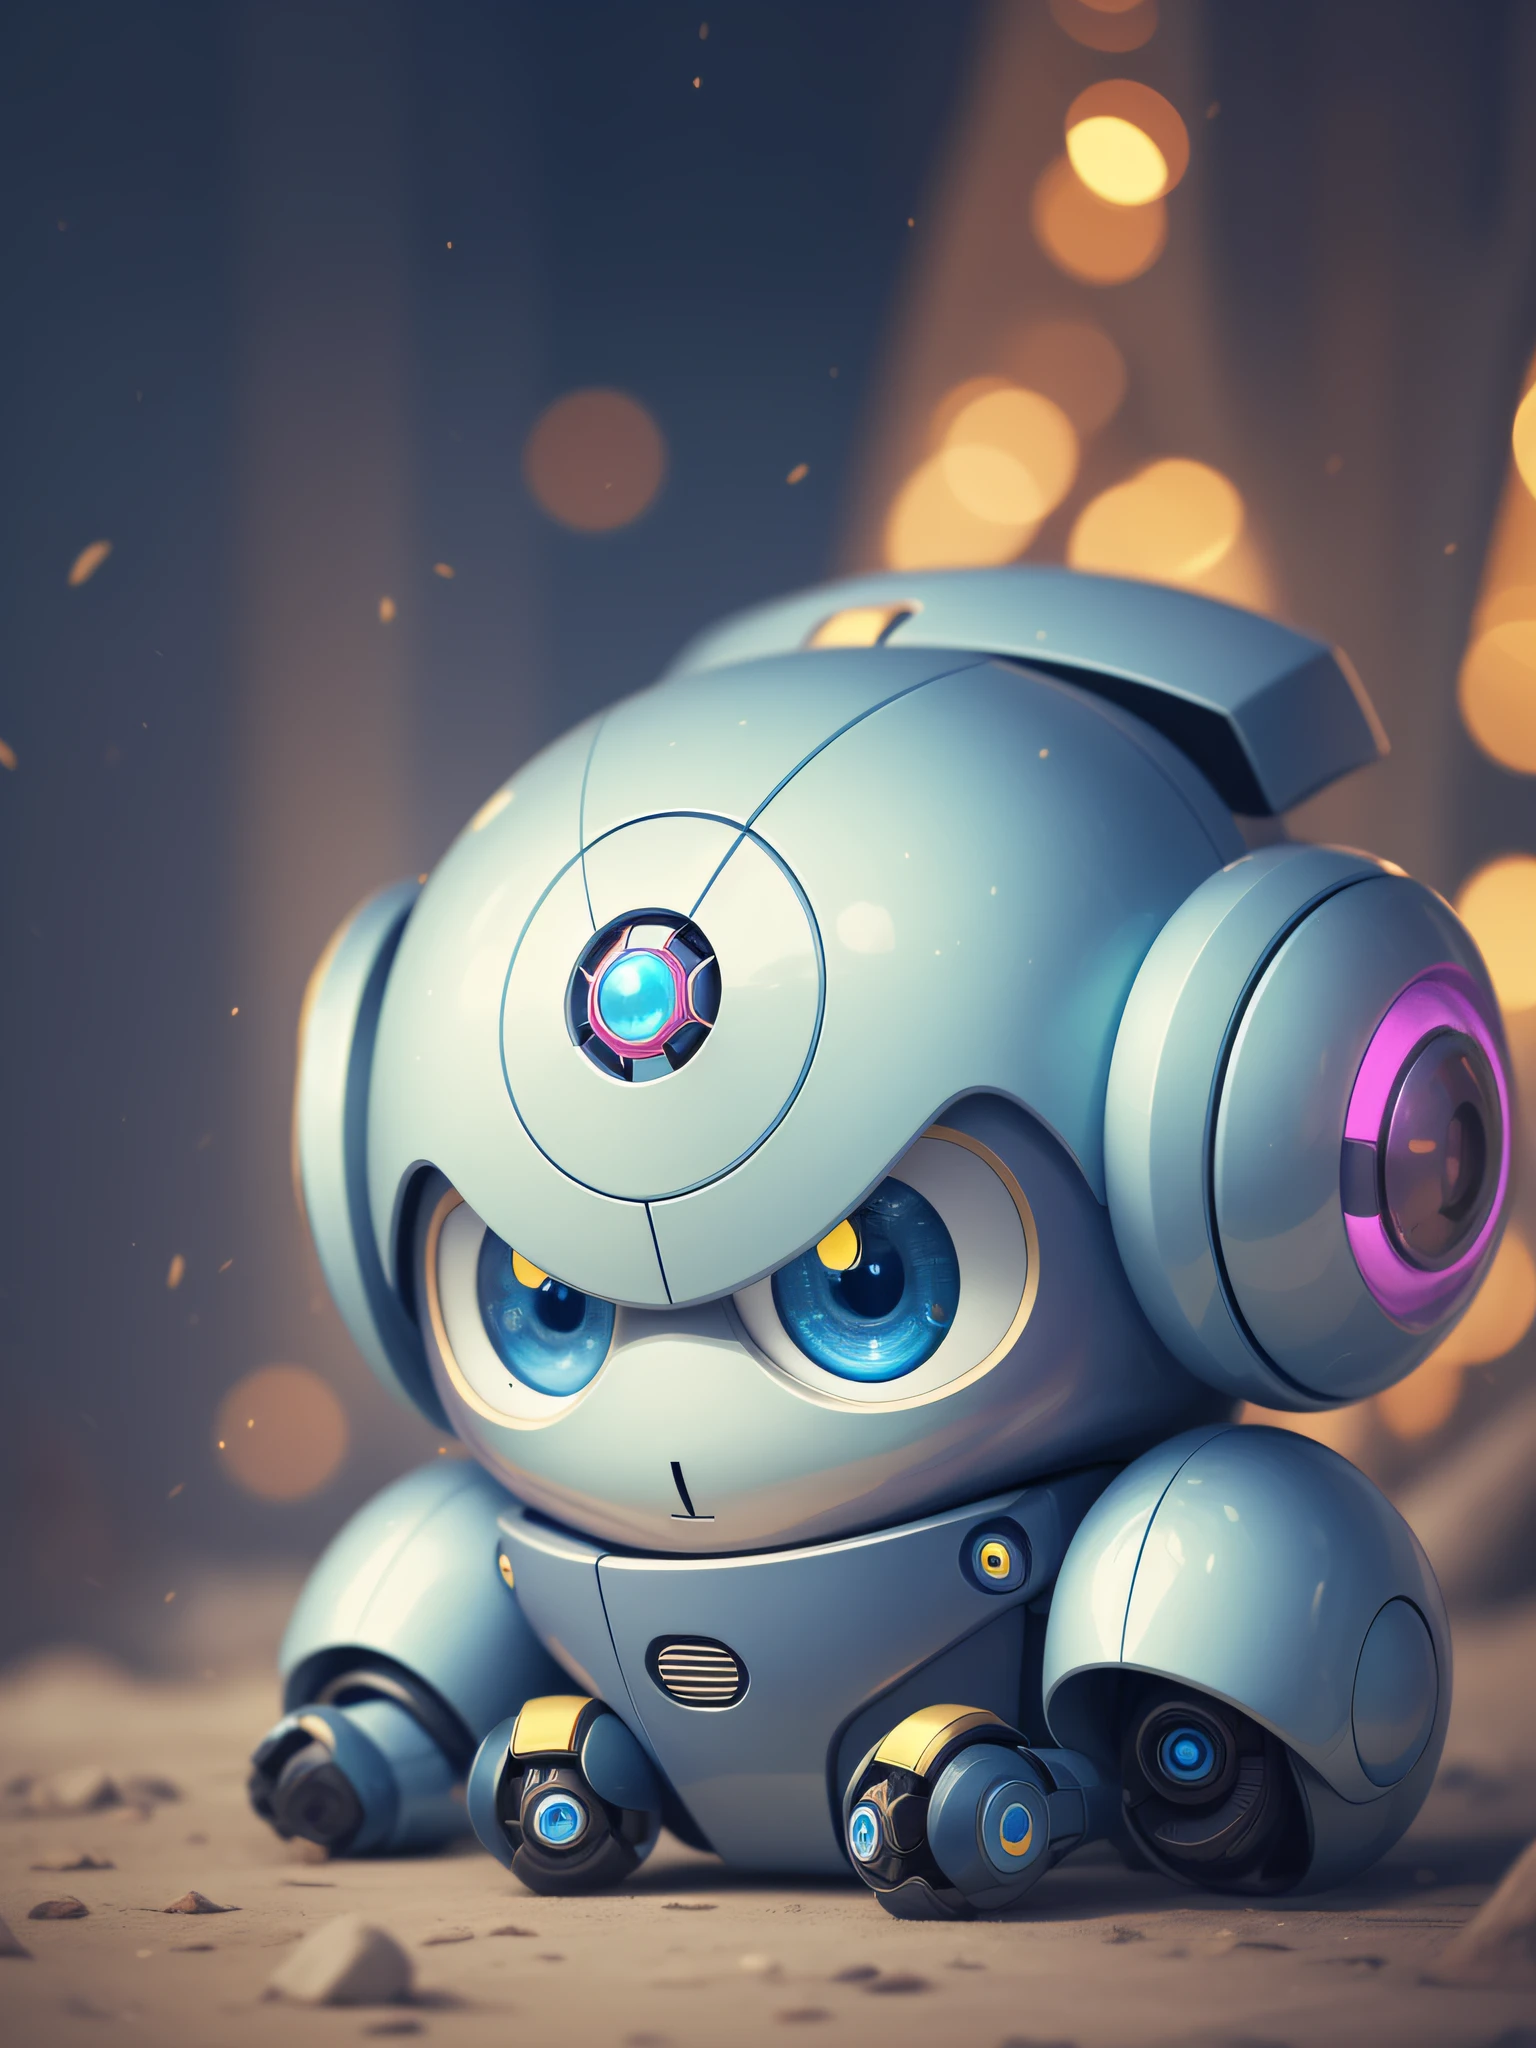 蓝色 可爱 帅气 机器人 黄色 aiartwork 可爱 可爱 可爱 卡哇伊 幻想 人物 幻想 生物 机器人化 robotnik